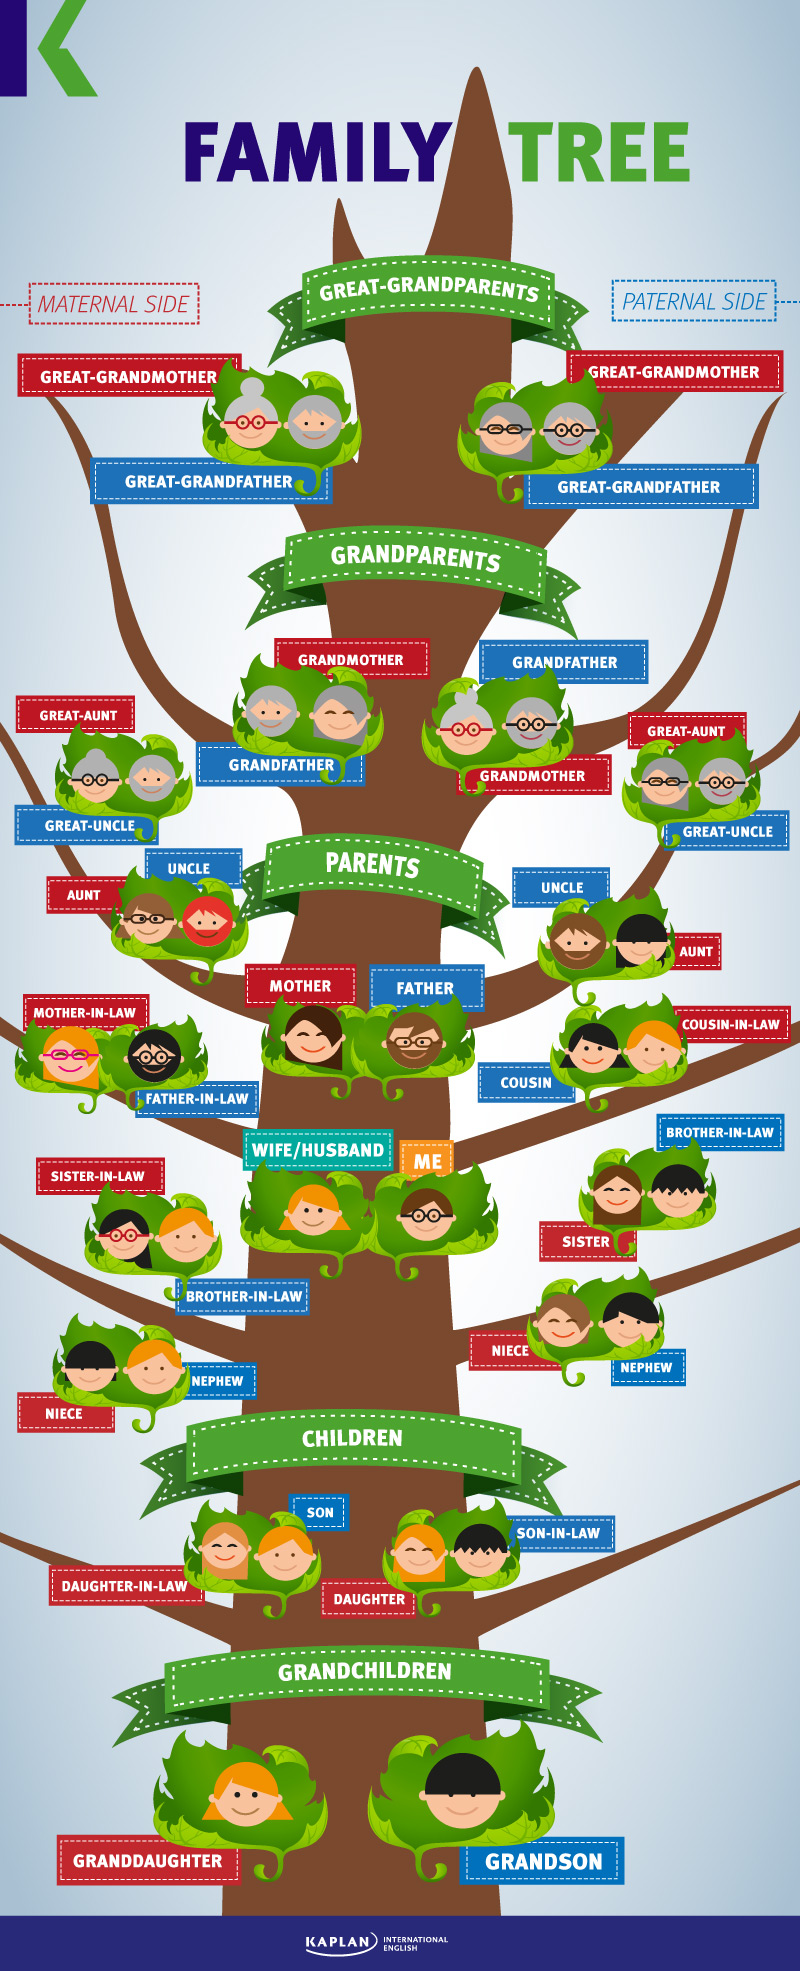 إنفوجرافيك رسم شجرة العائلة بالانجليزية - FAMILY TREE